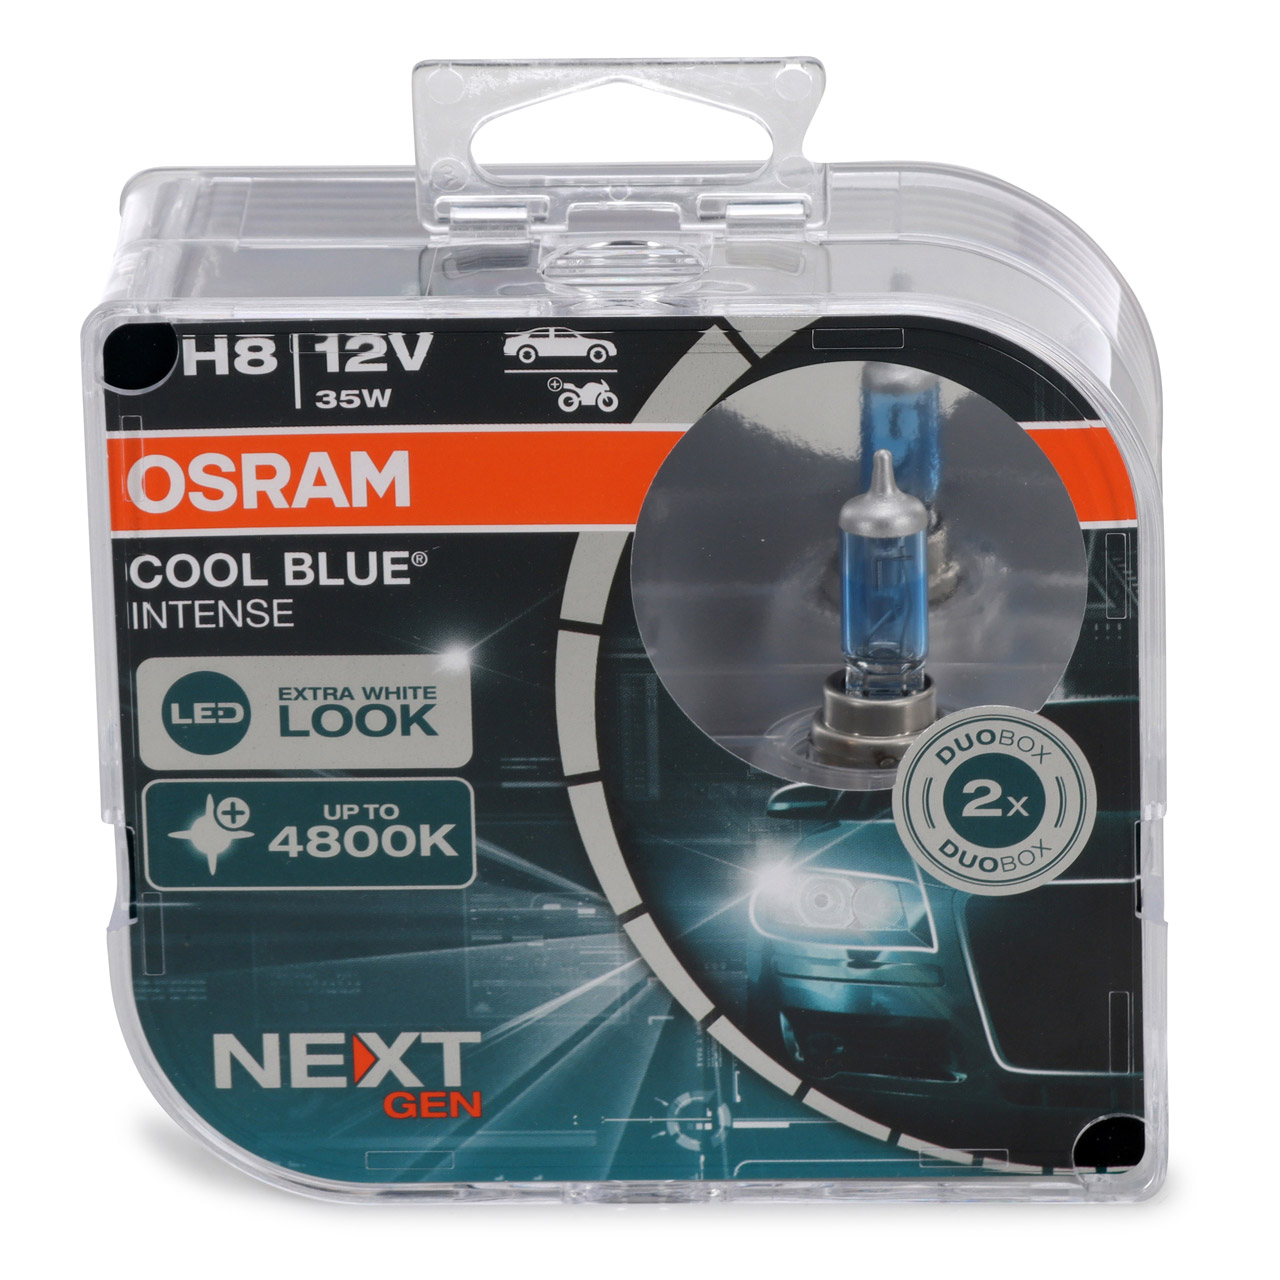 2x OSRAM Glühlampe H8 COOL BLUE INTENSE Next Gen 12V 35W PGJ19-1 4800K